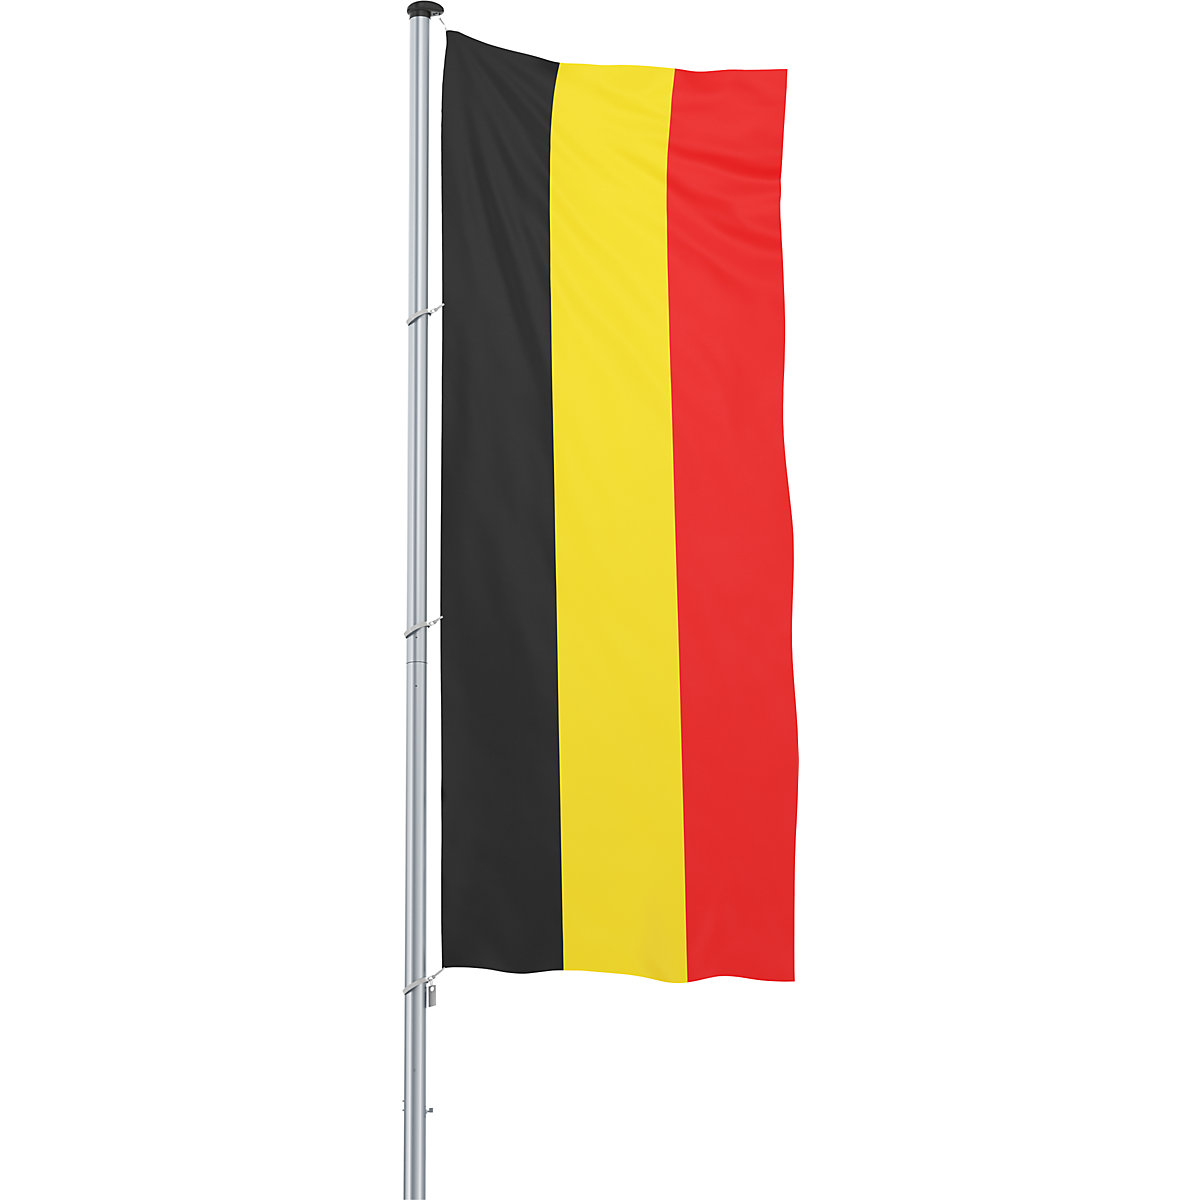 Hijsvlag/landvlag – Mannus, formaat 1,2 x 3 m, België-6